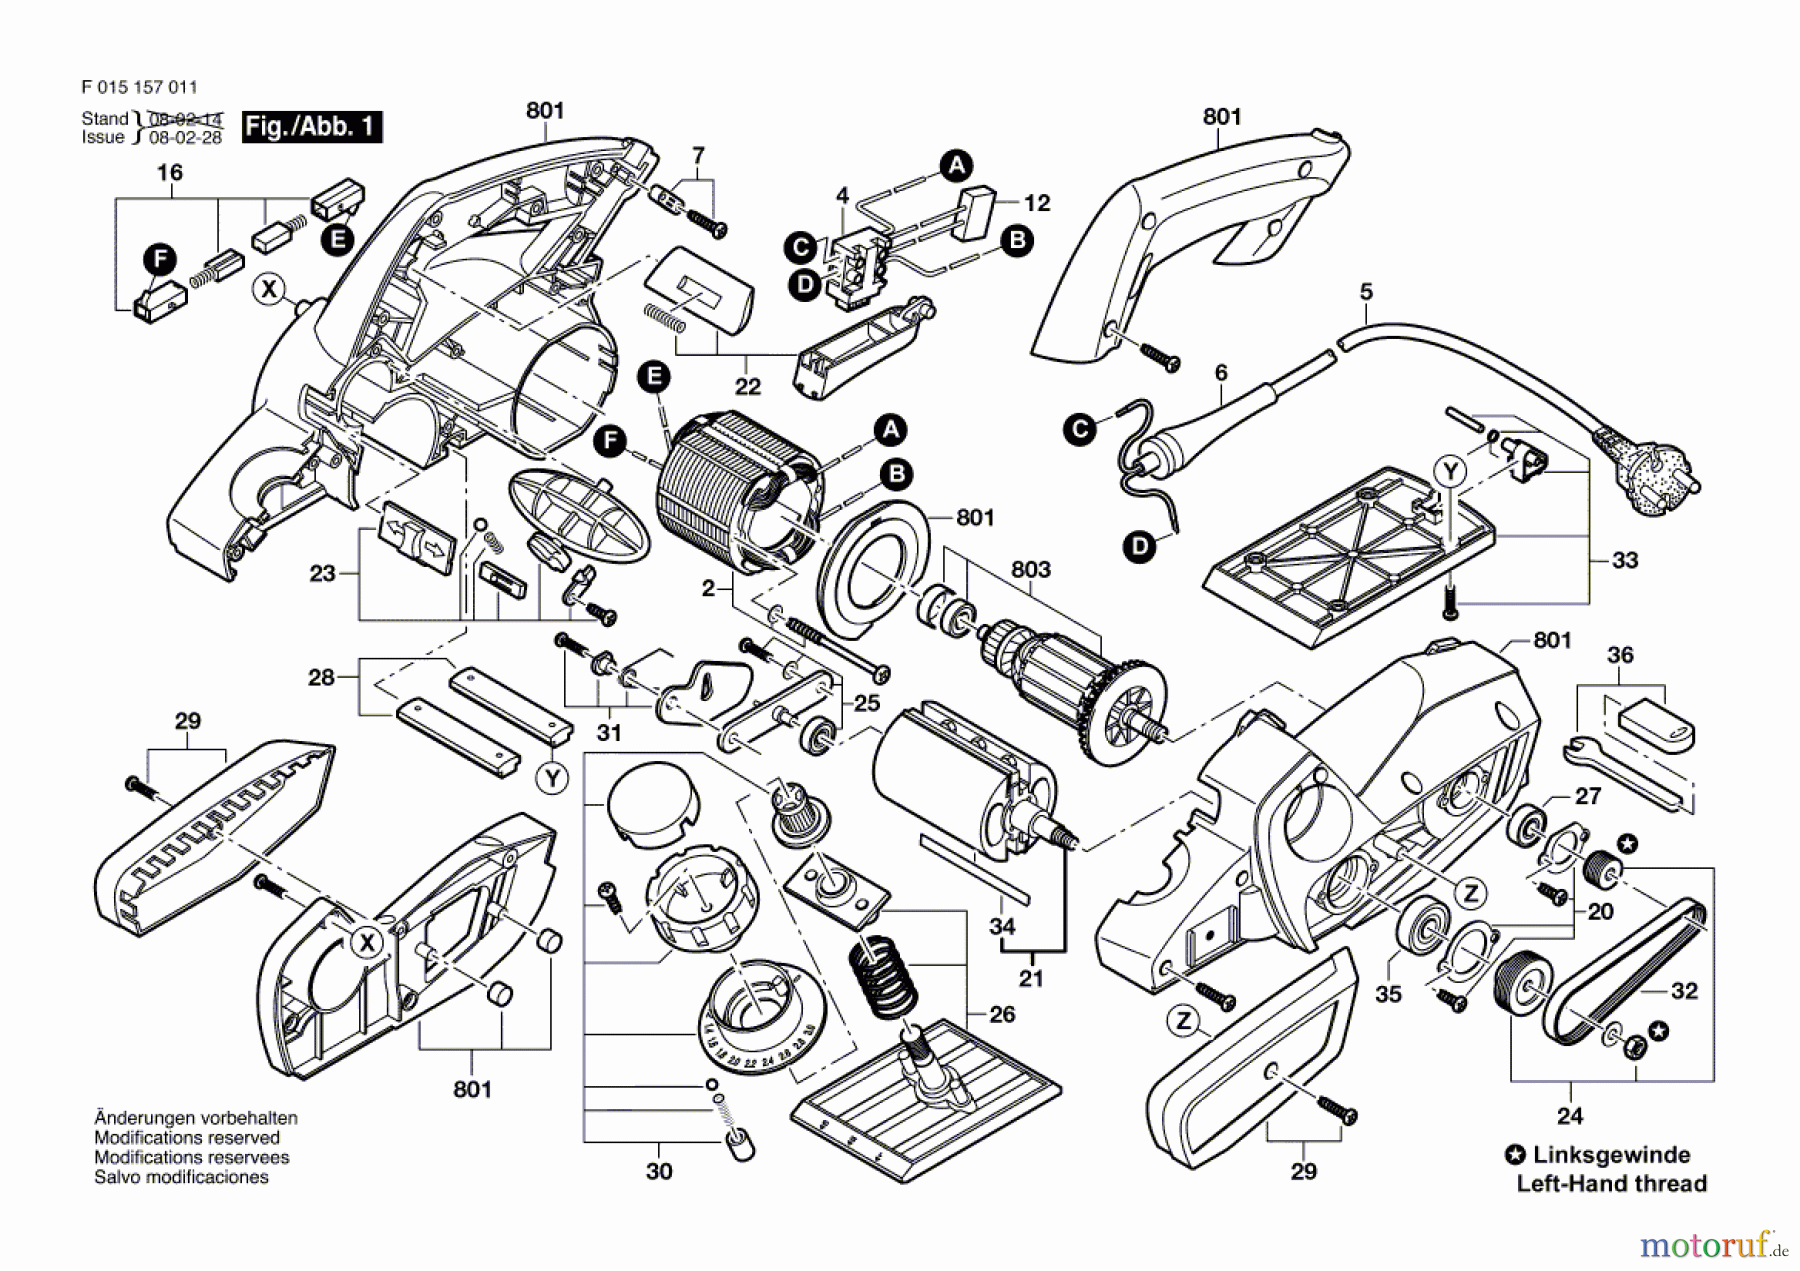  Bosch Werkzeug Handhobel 1570 Seite 1